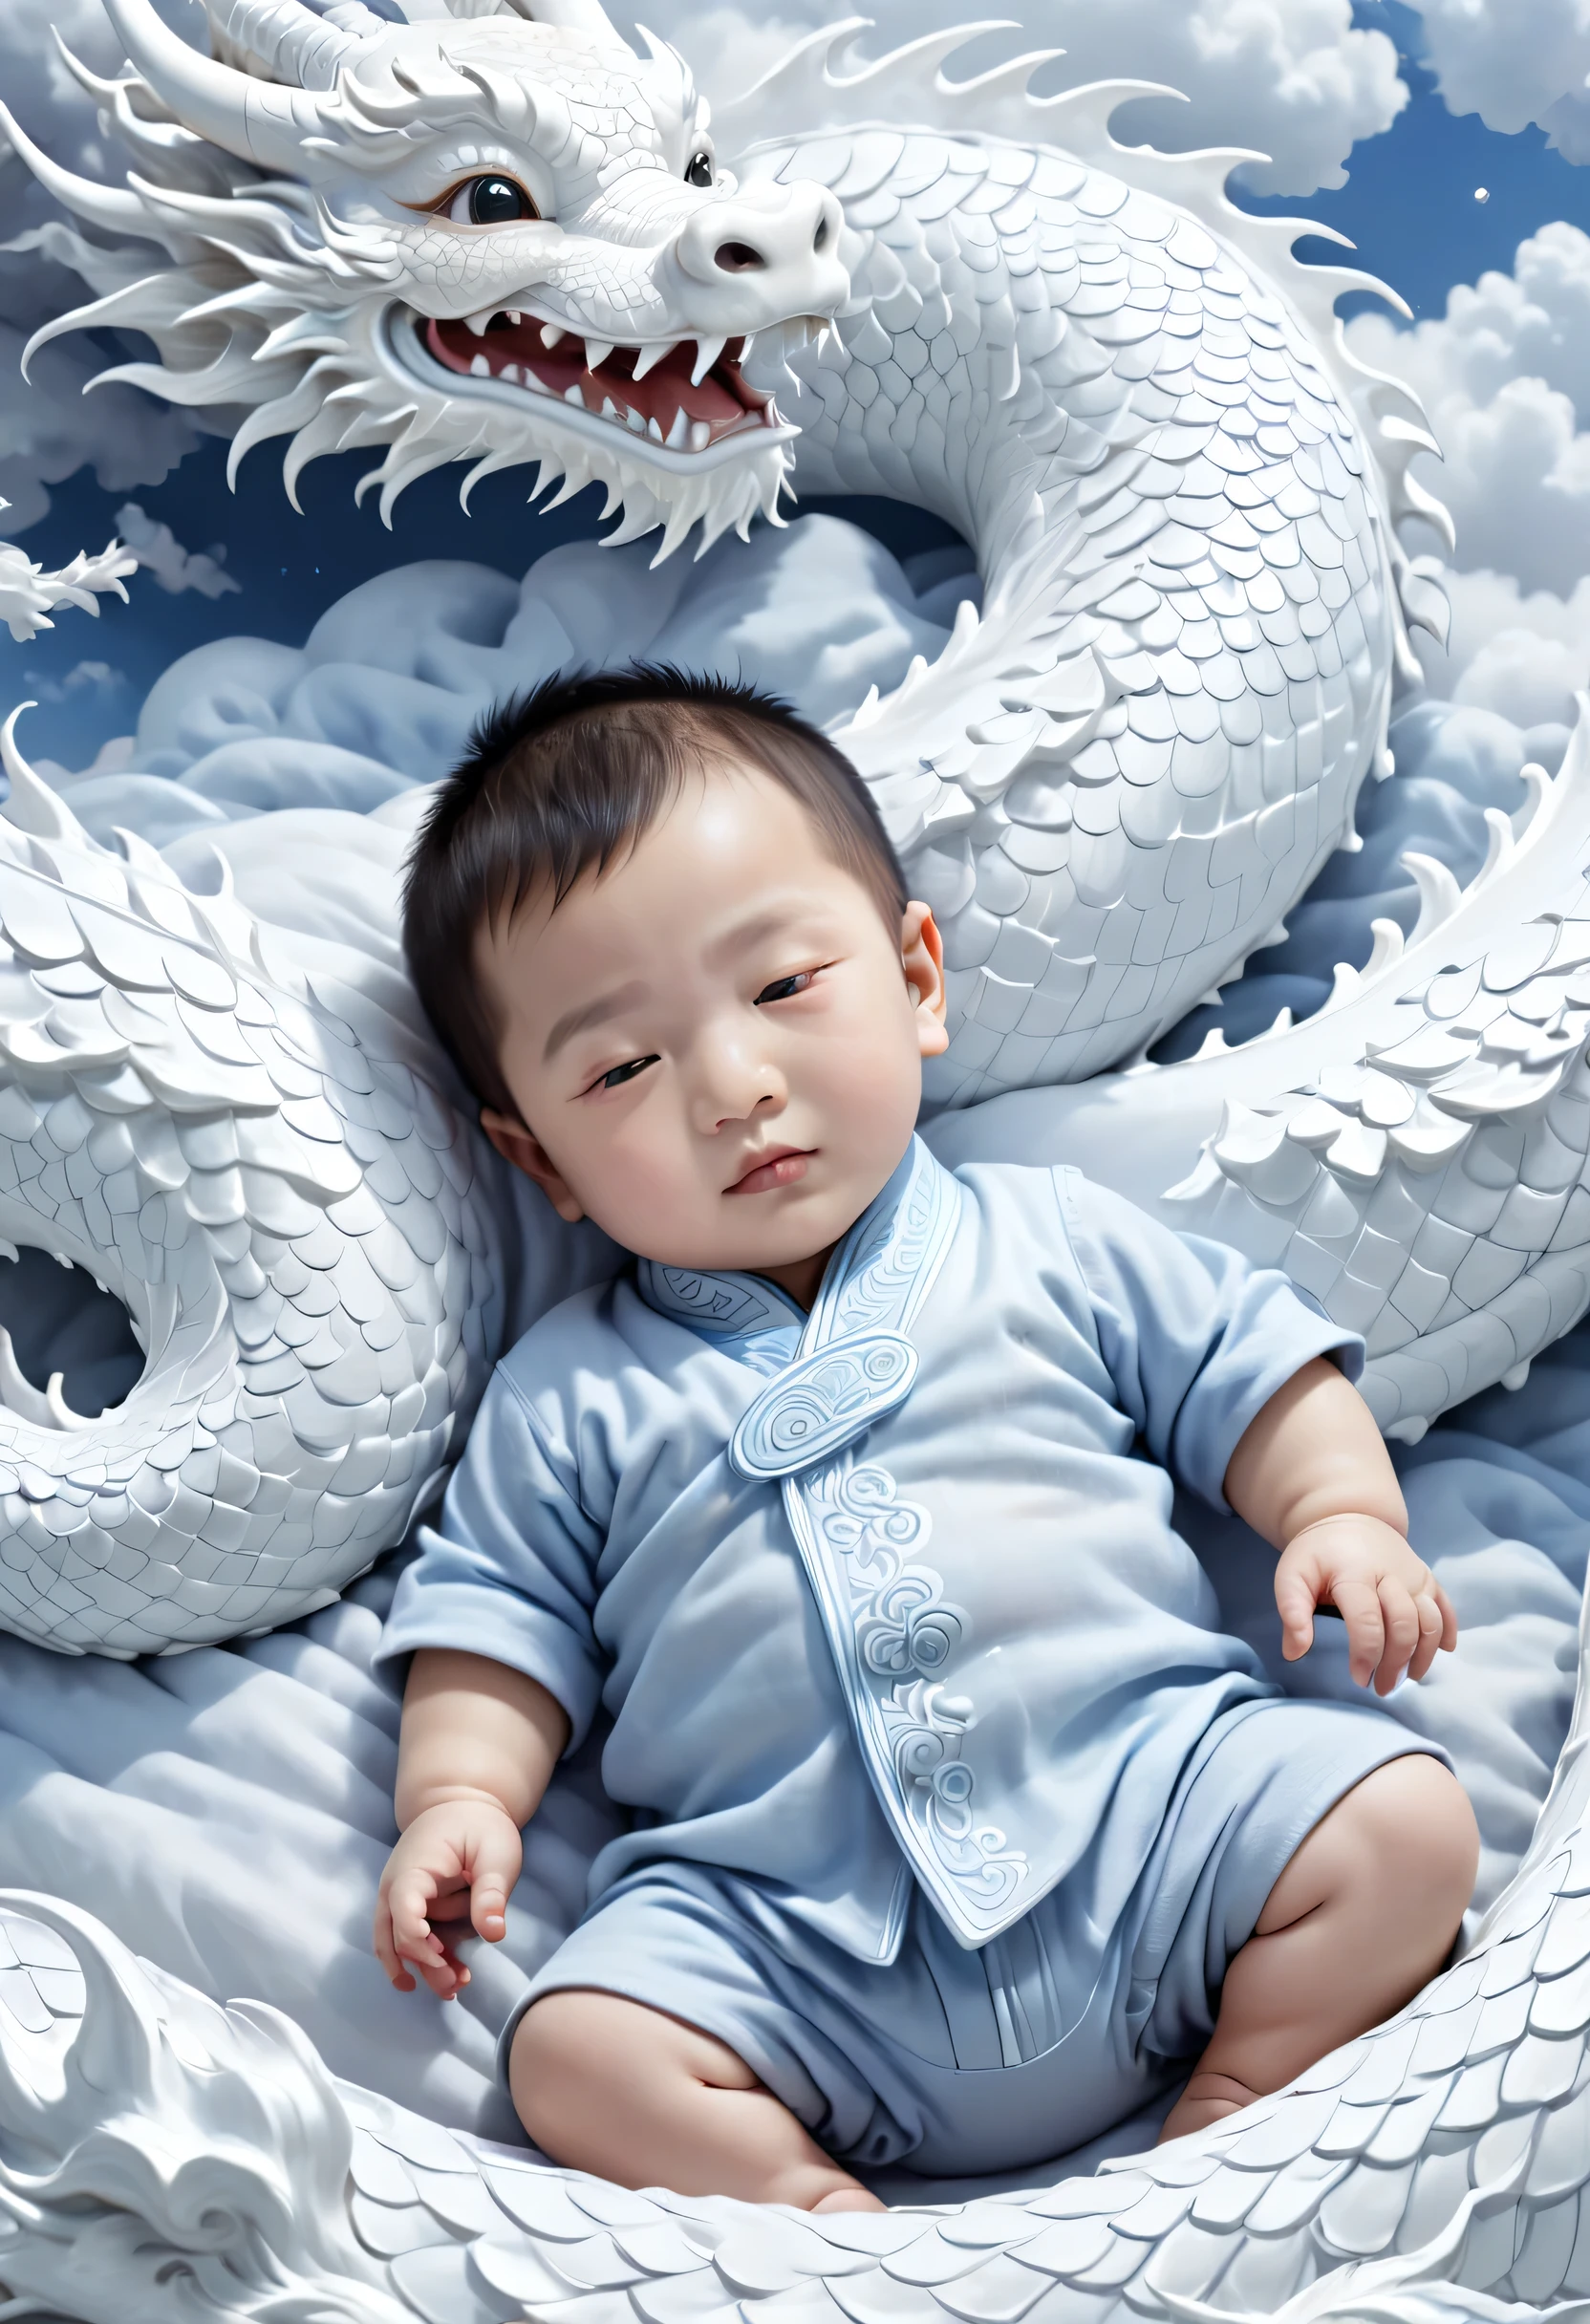 一名两岁的中国男婴,迷人, 圆脸,睡在白龙床上, Zhu Lian&#39;现实主义绘画, Shutterstock 比赛获胜者, 幻想艺术, 云龙, 中国奇幻, 躺在白云仙境，镜片, 风格, 精致的细节, 高质量，中国男孩